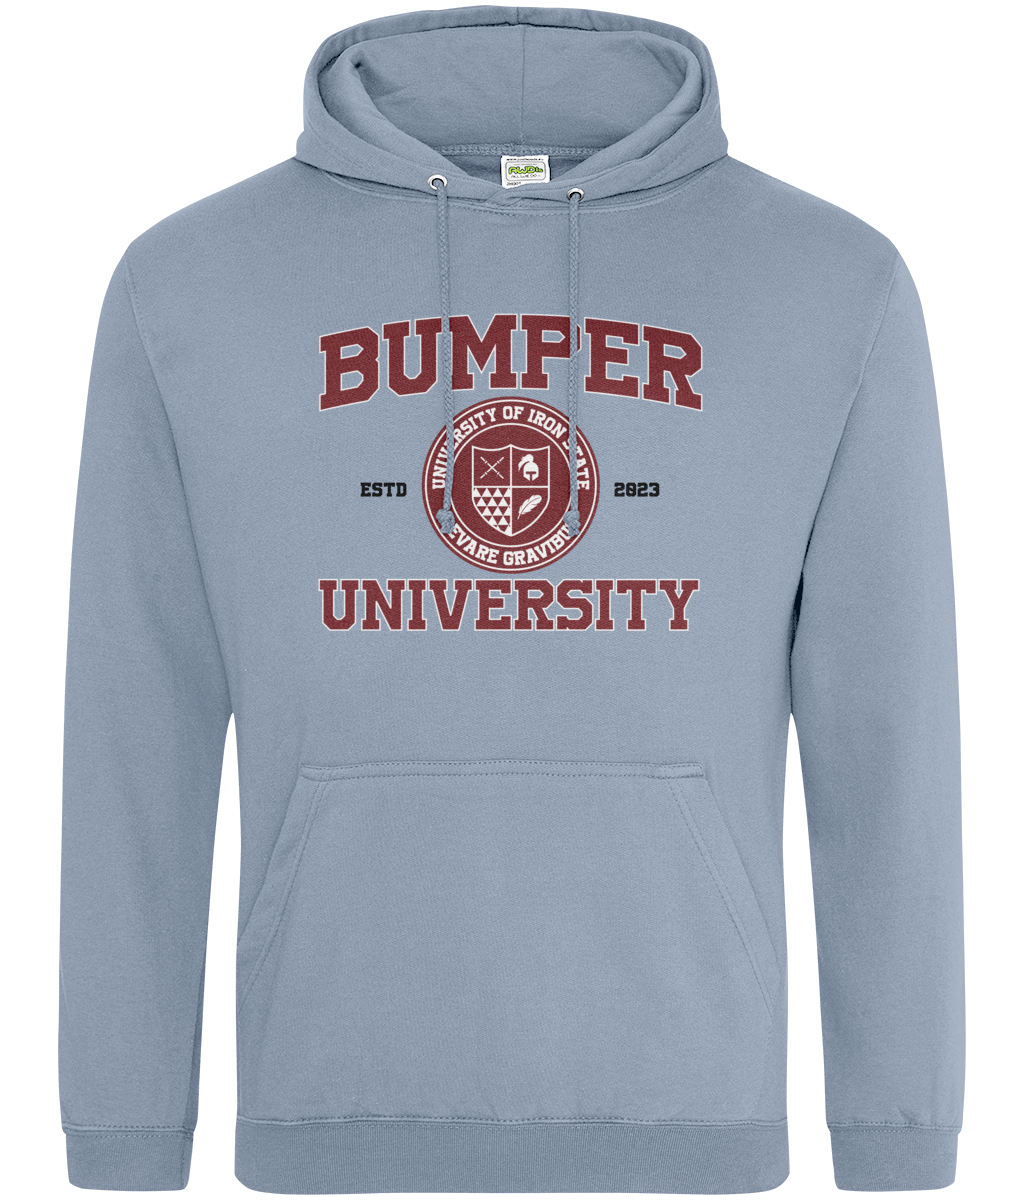 Bumper crest hoodie - Bumper uni